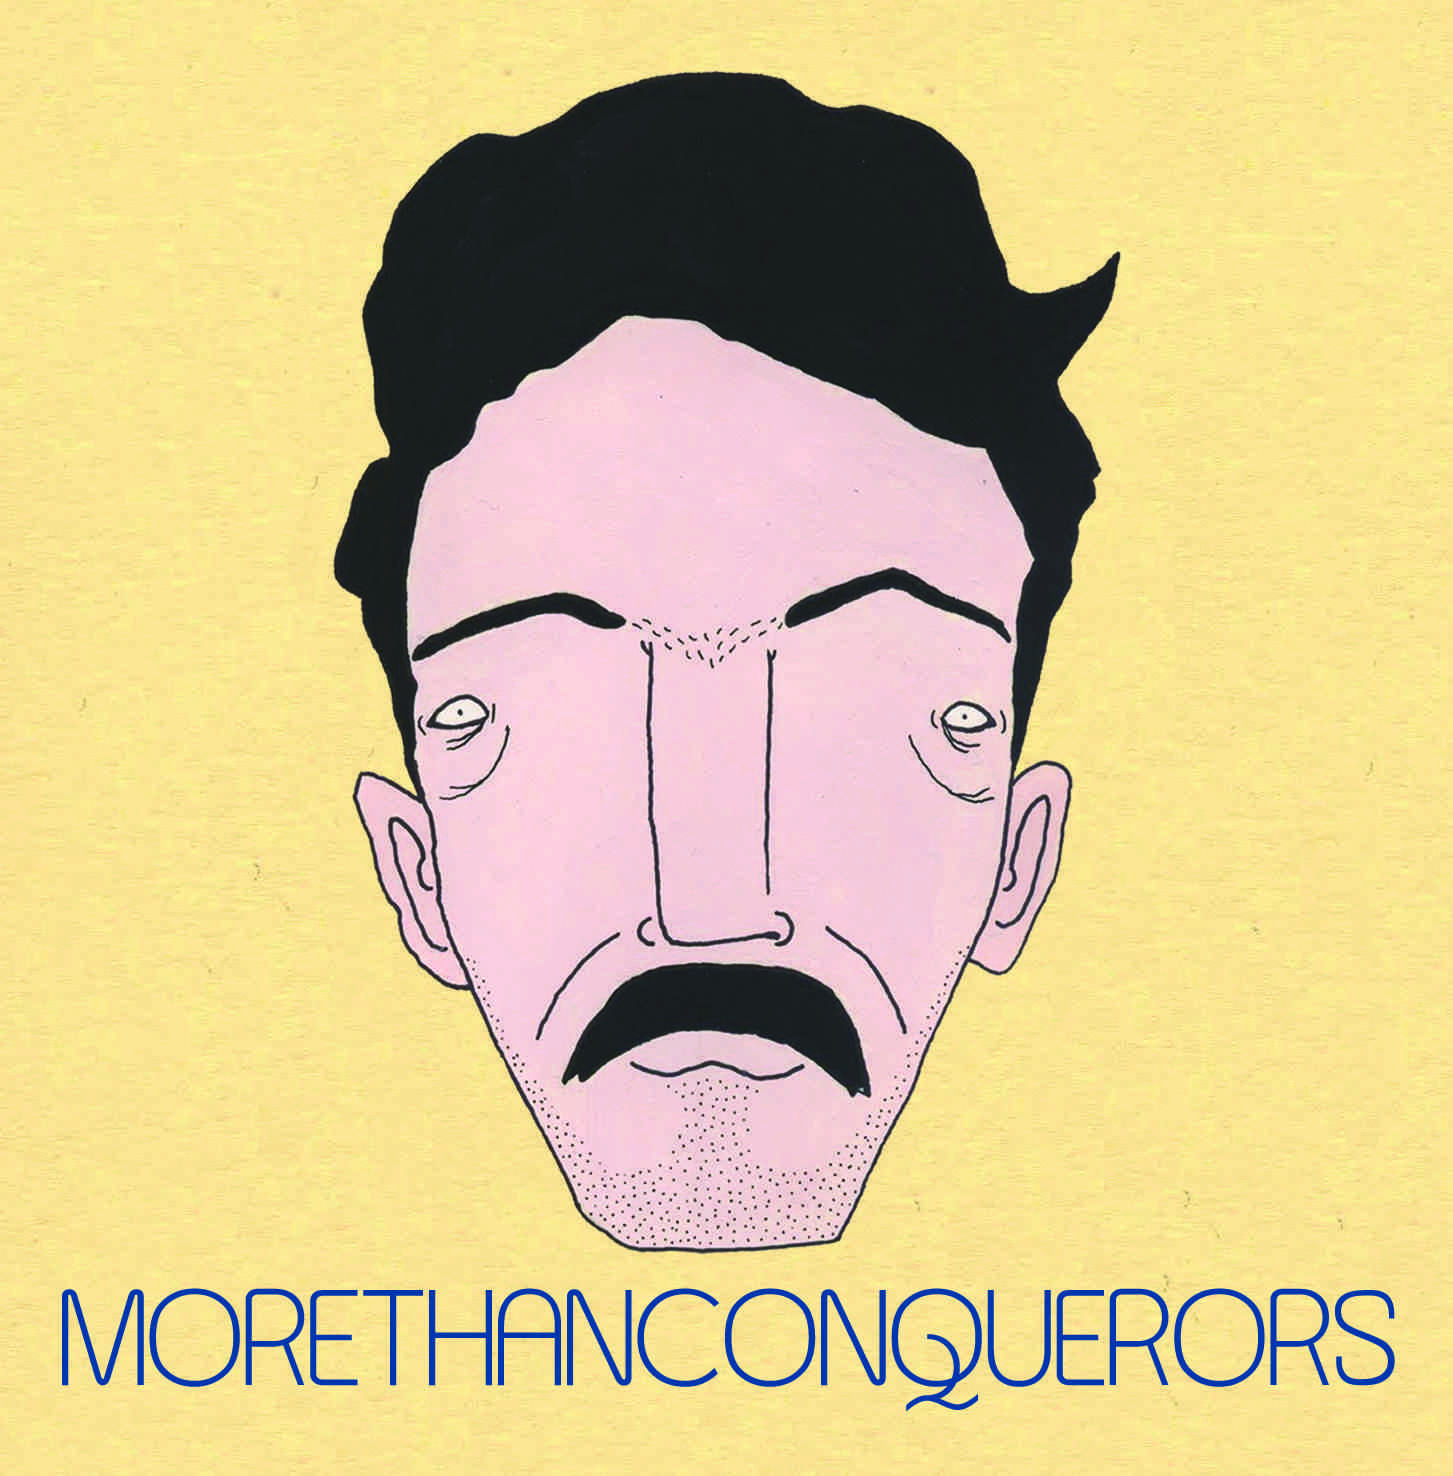 More Than Conquerors - More Than Conquerors